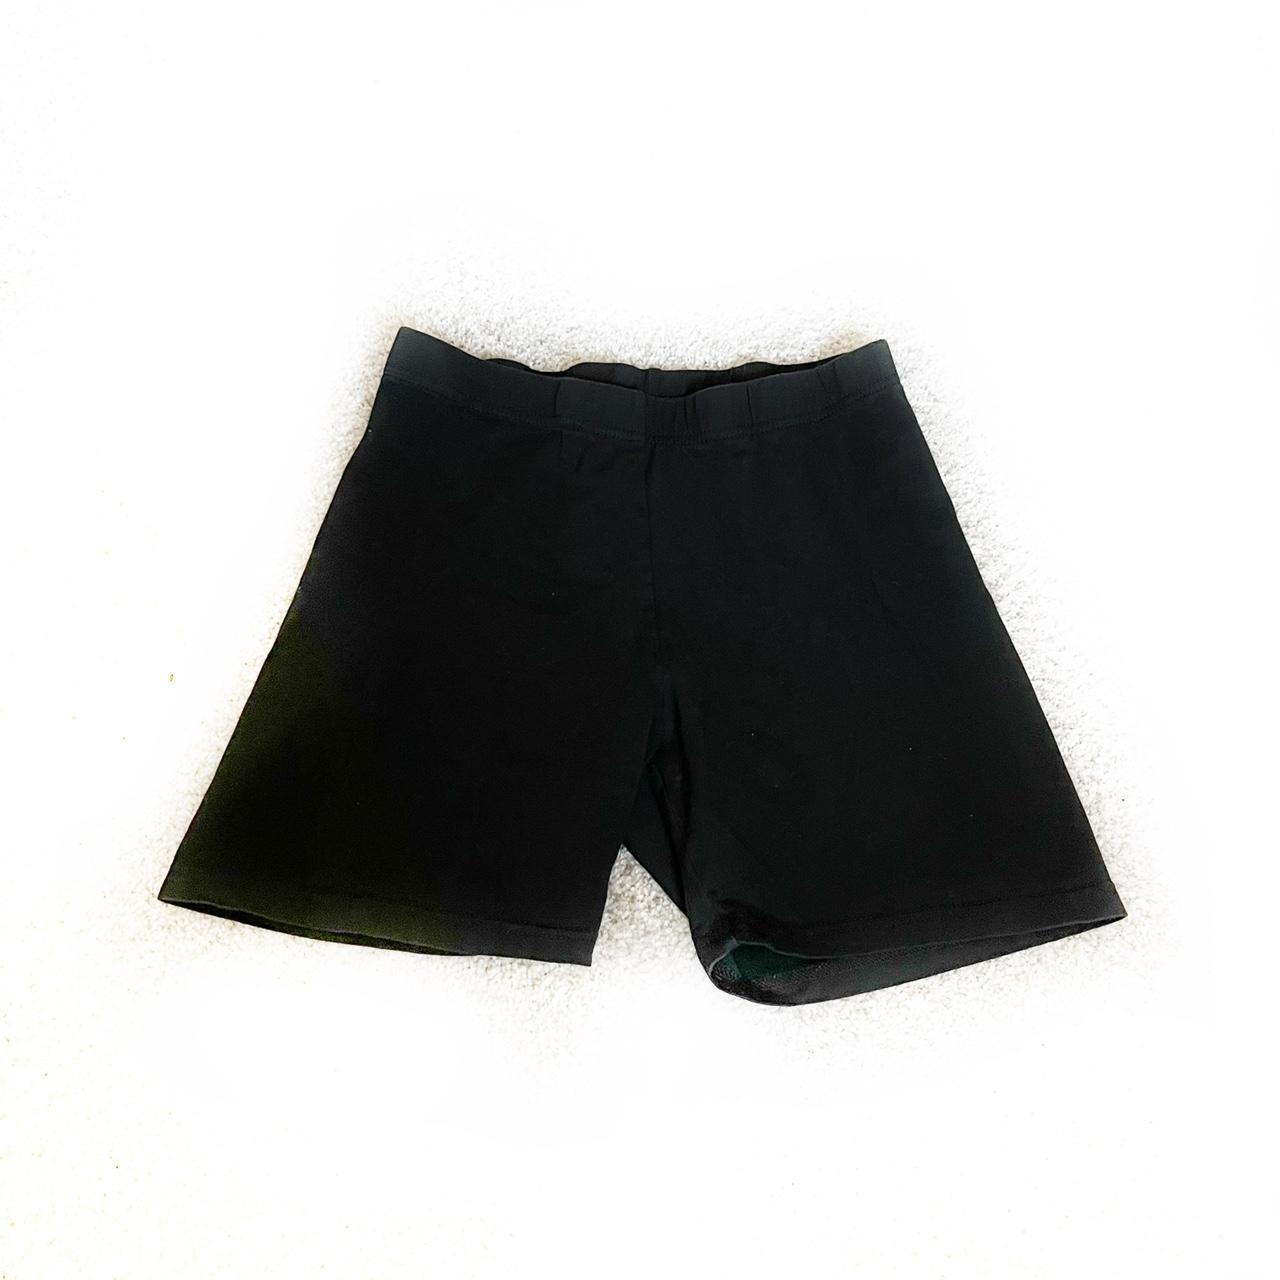 Product Image 1 - Shein black biker shorts
Super comfy
Size